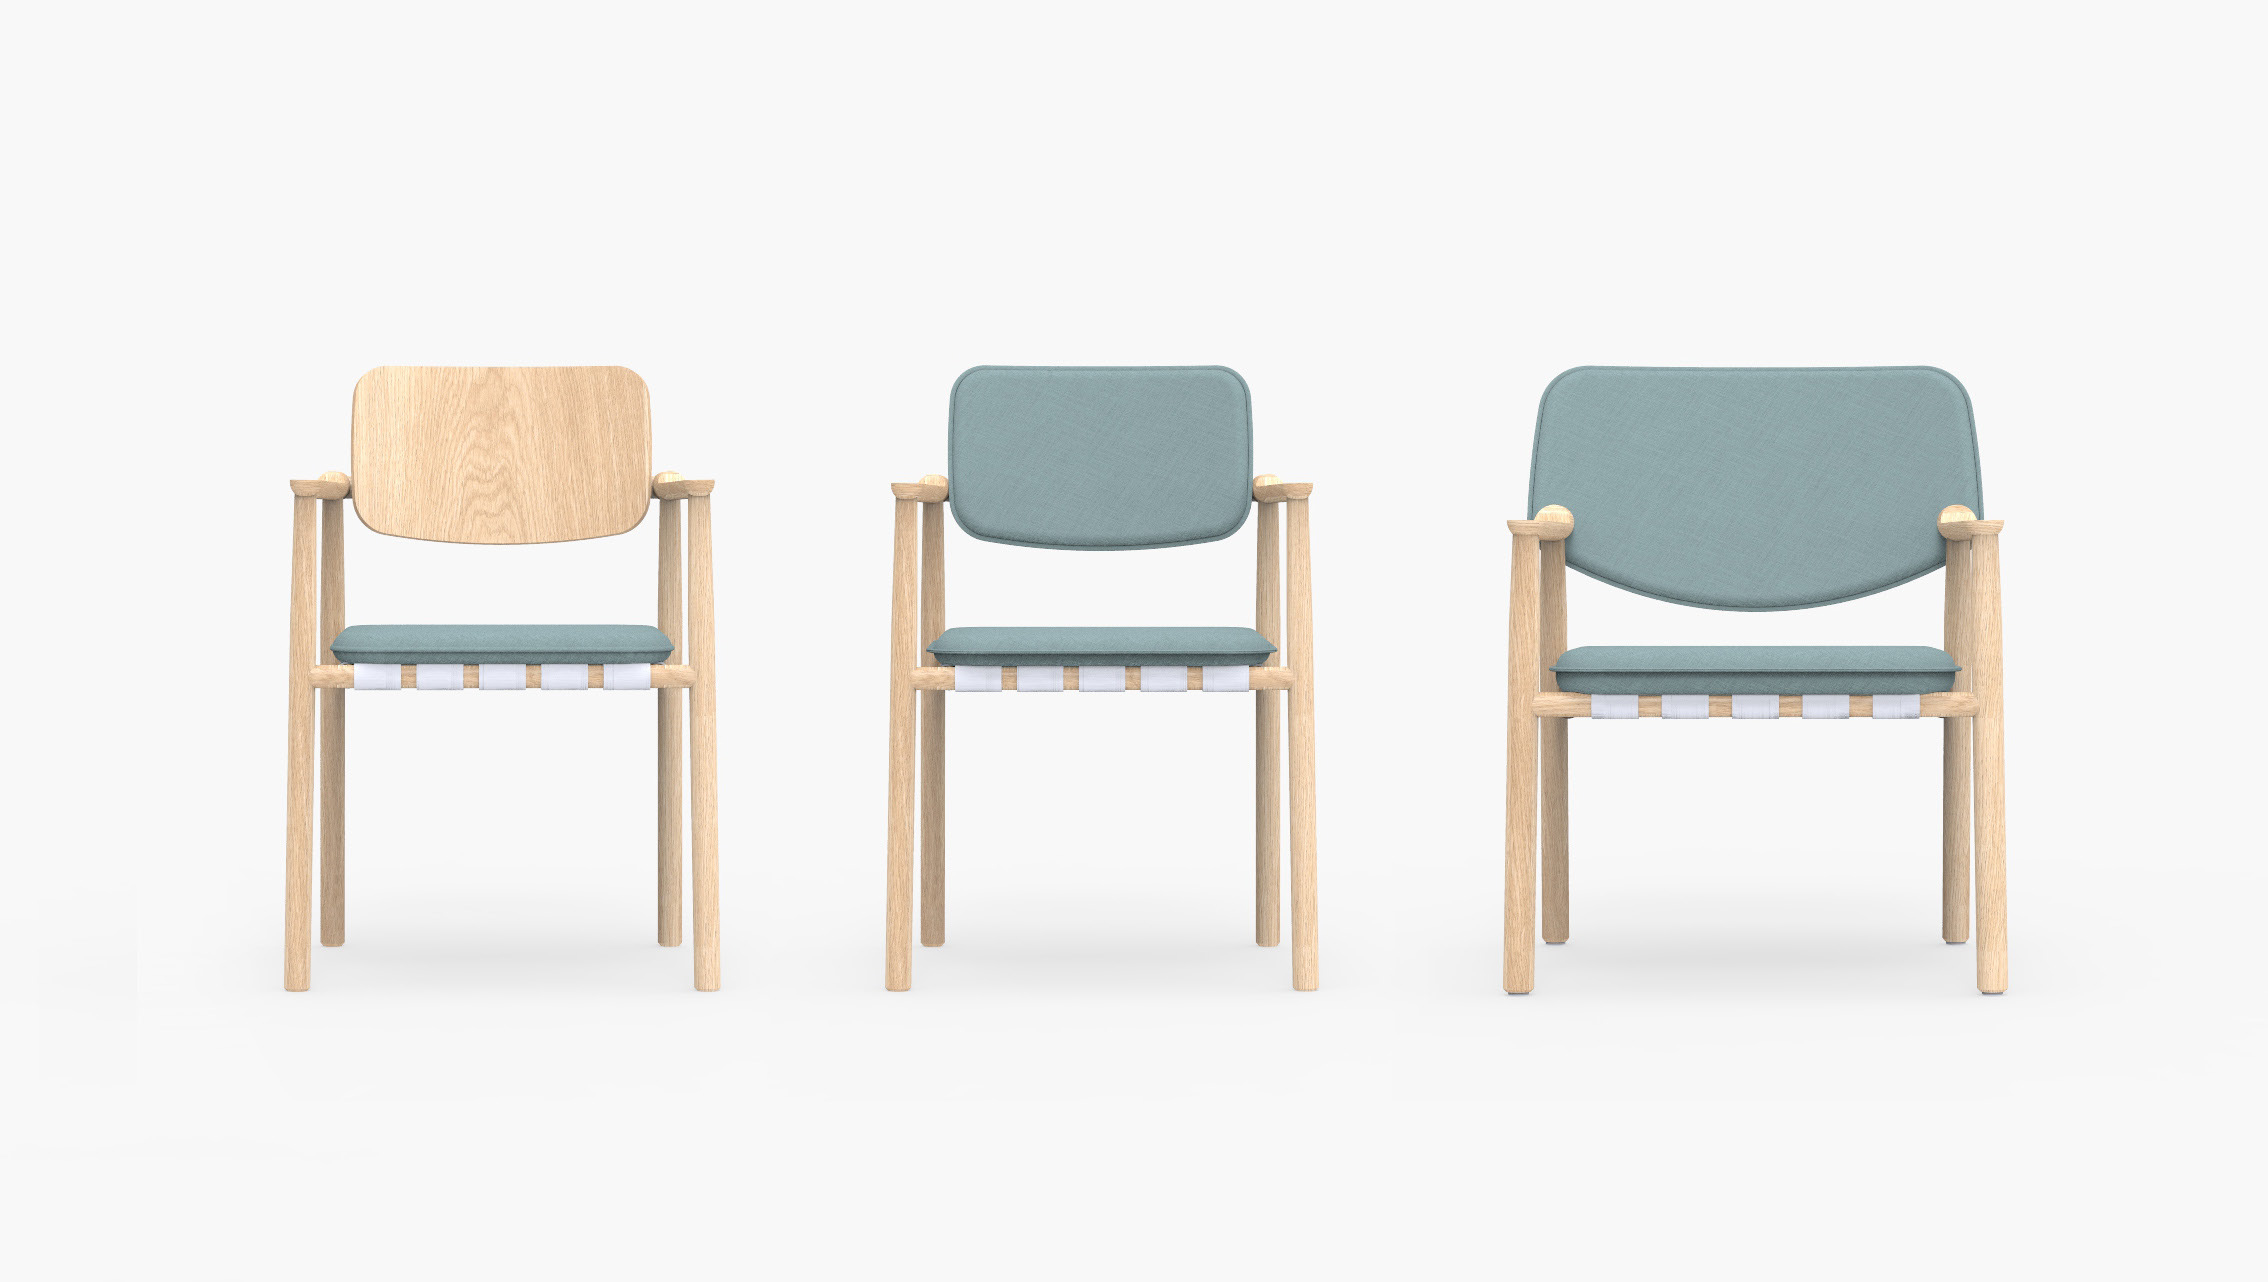 Design nordico: le sedie Belk disegnate da Szpunar Studio